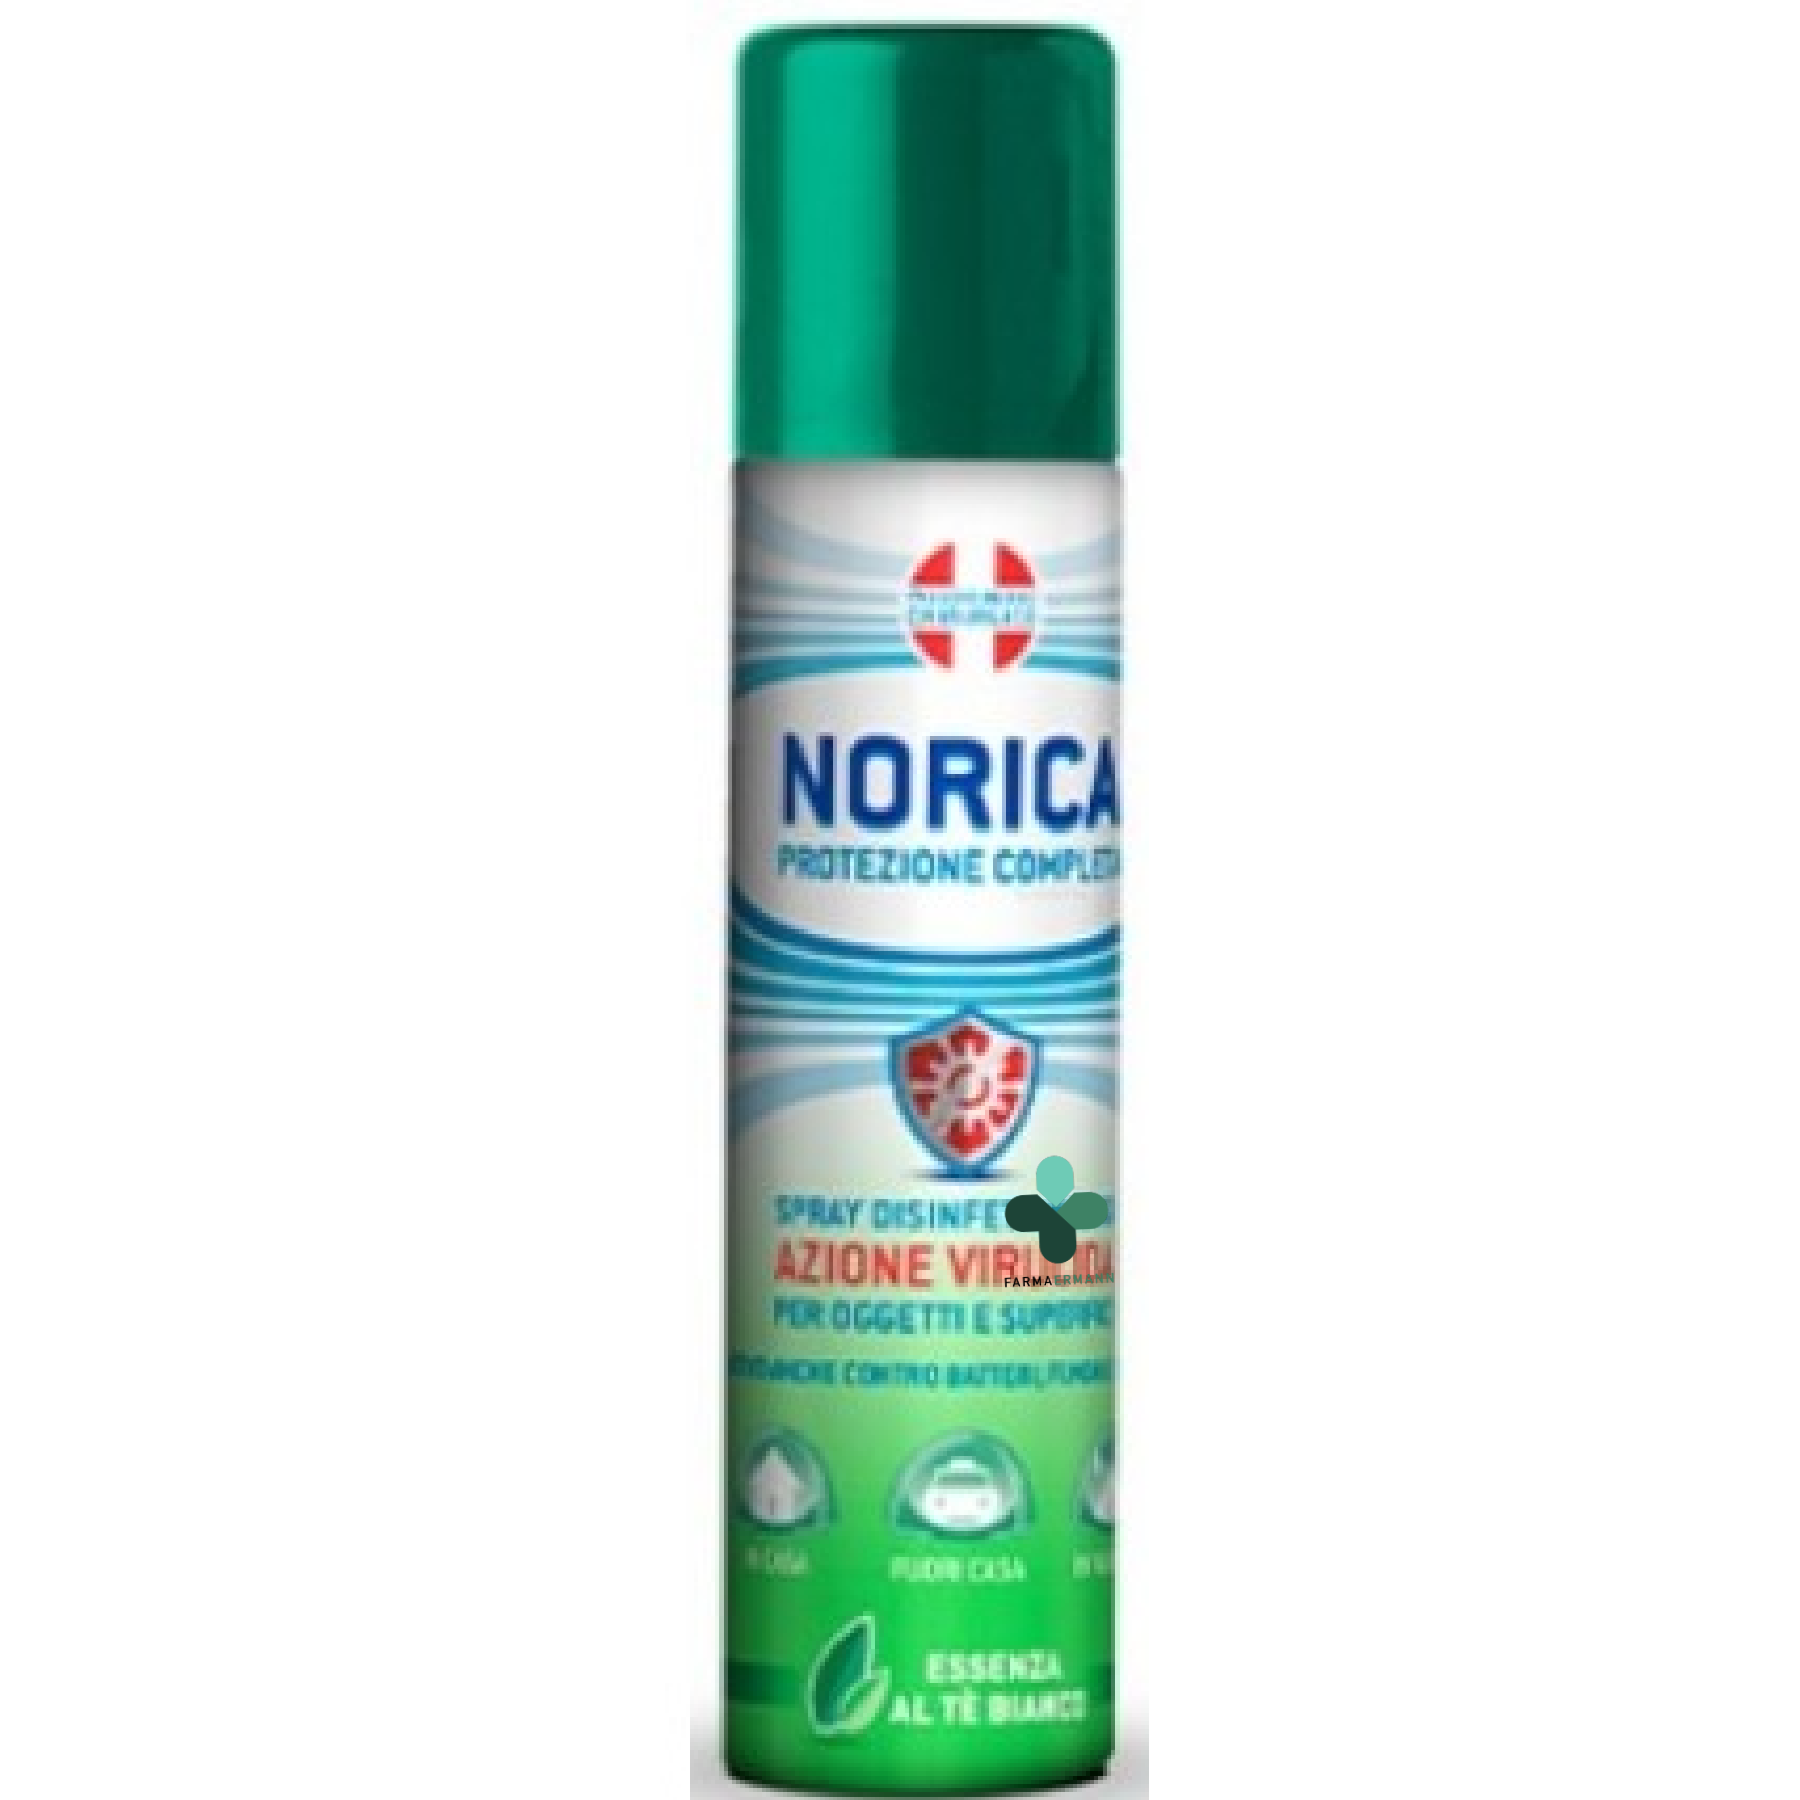 Norica disinfettante virucida spray per oggetti e superfici